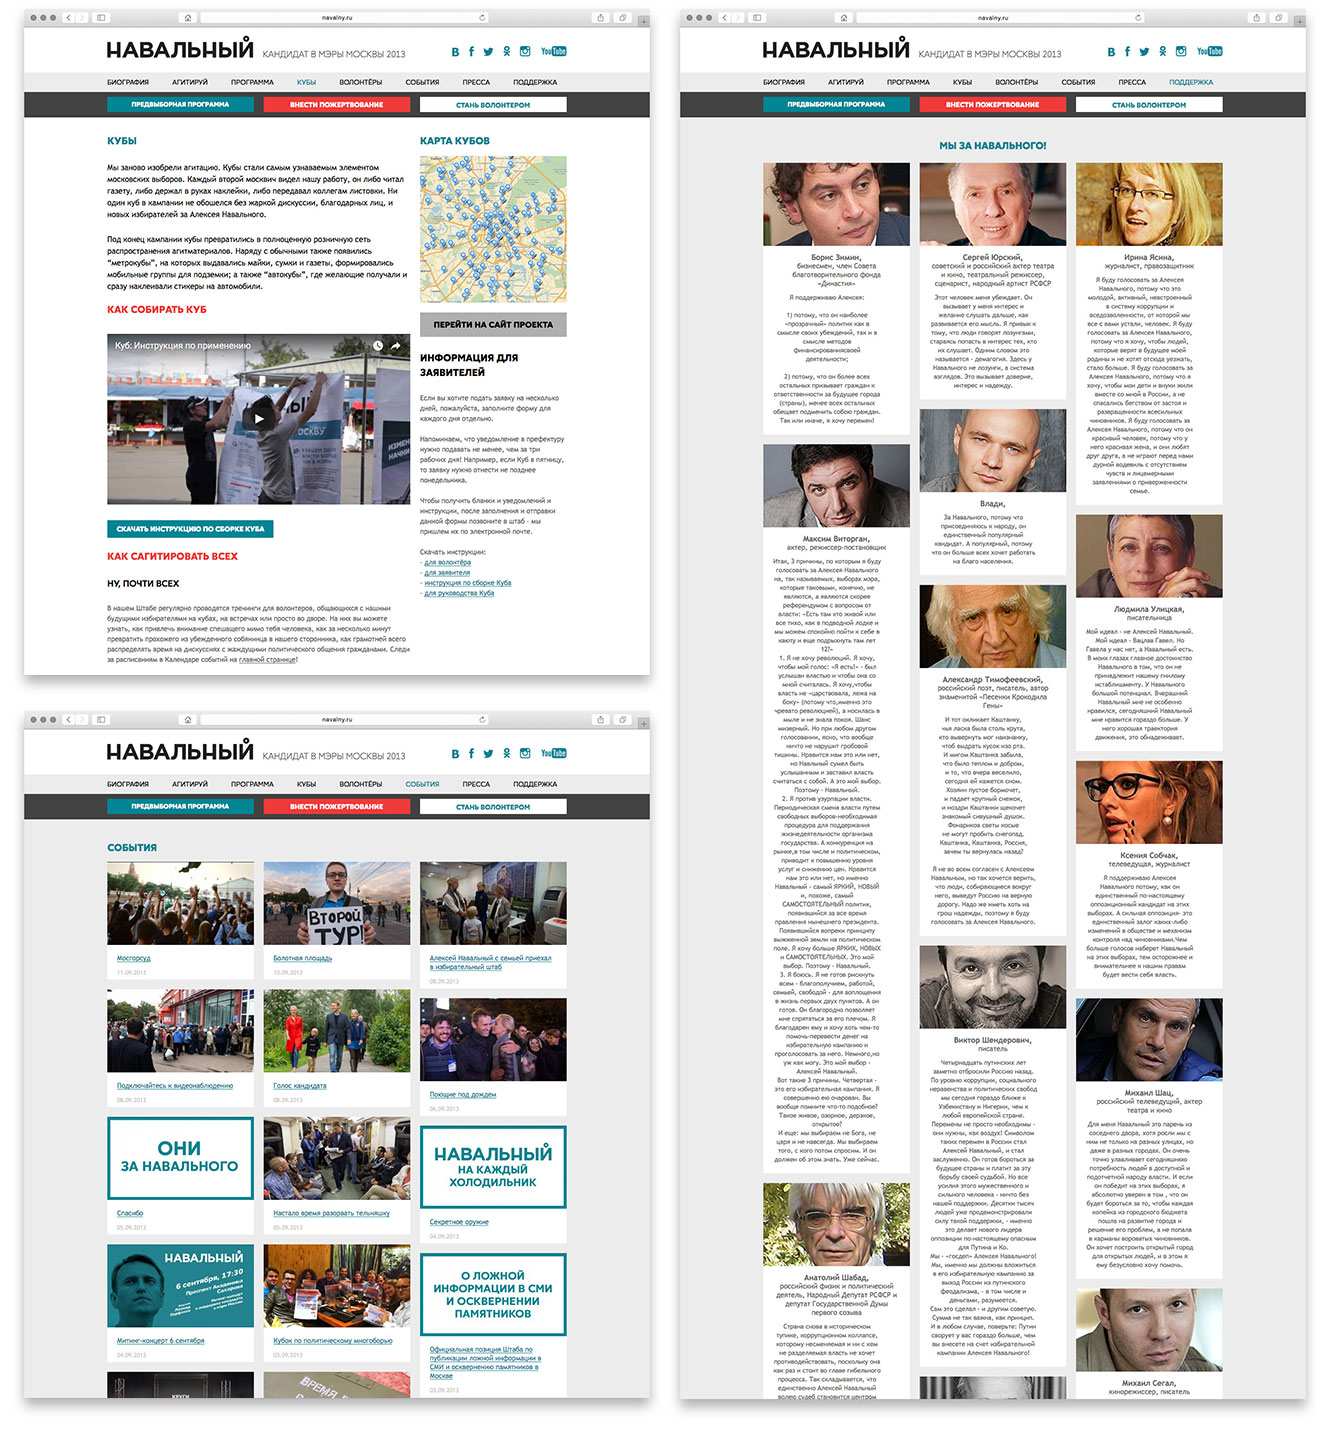 Разработка сайта кандидата в Мэры Москвы 2013 Алексея Навального